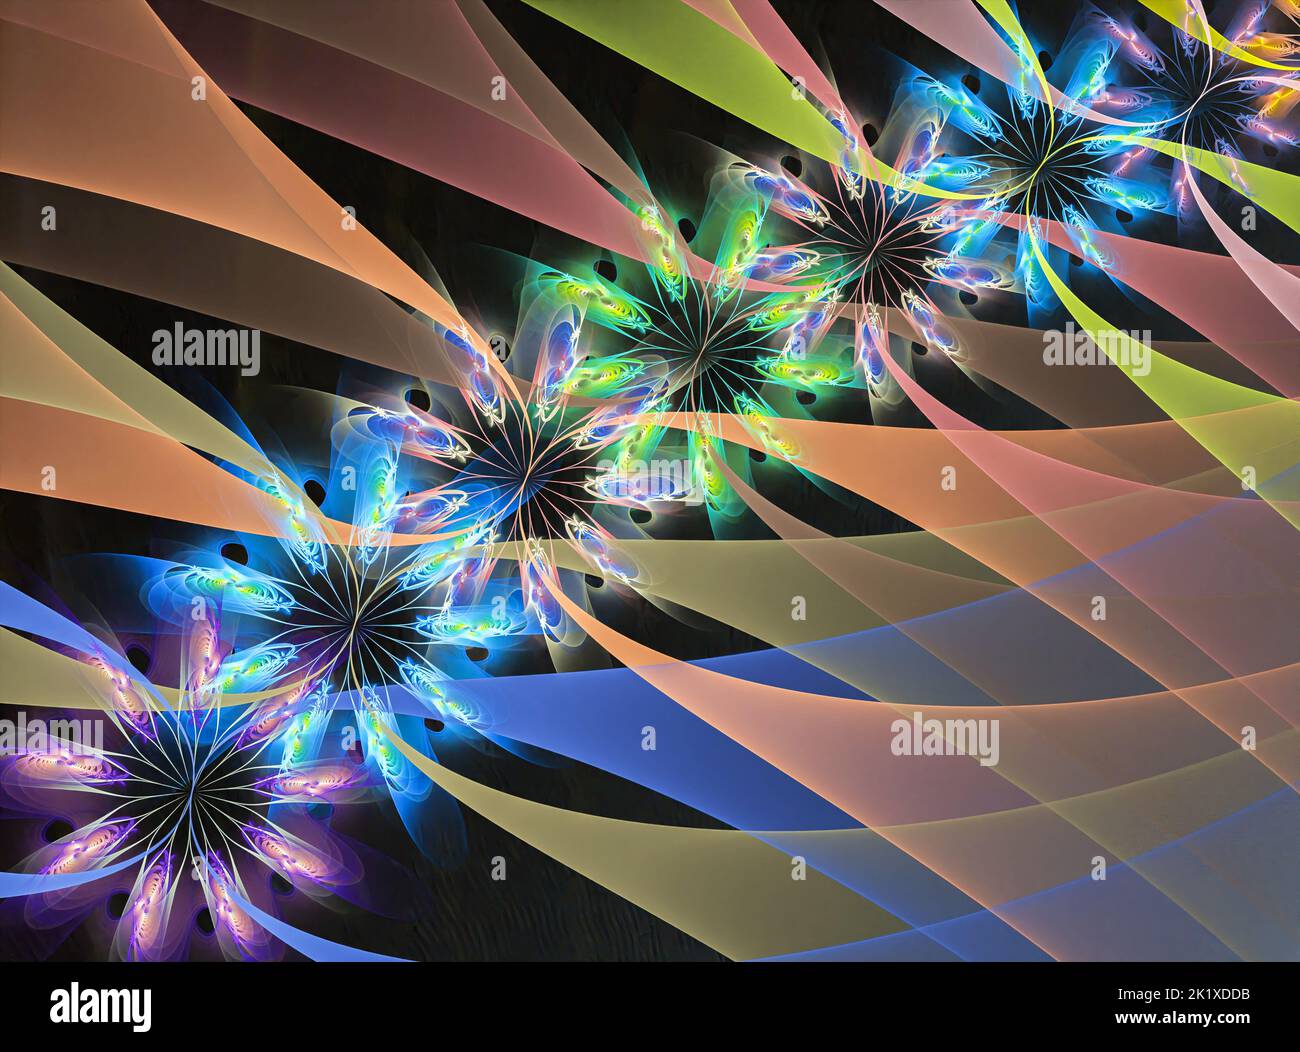 Fraktalbild als Hintergrund mit Blume. Kreatives Element für Design. Stockfoto